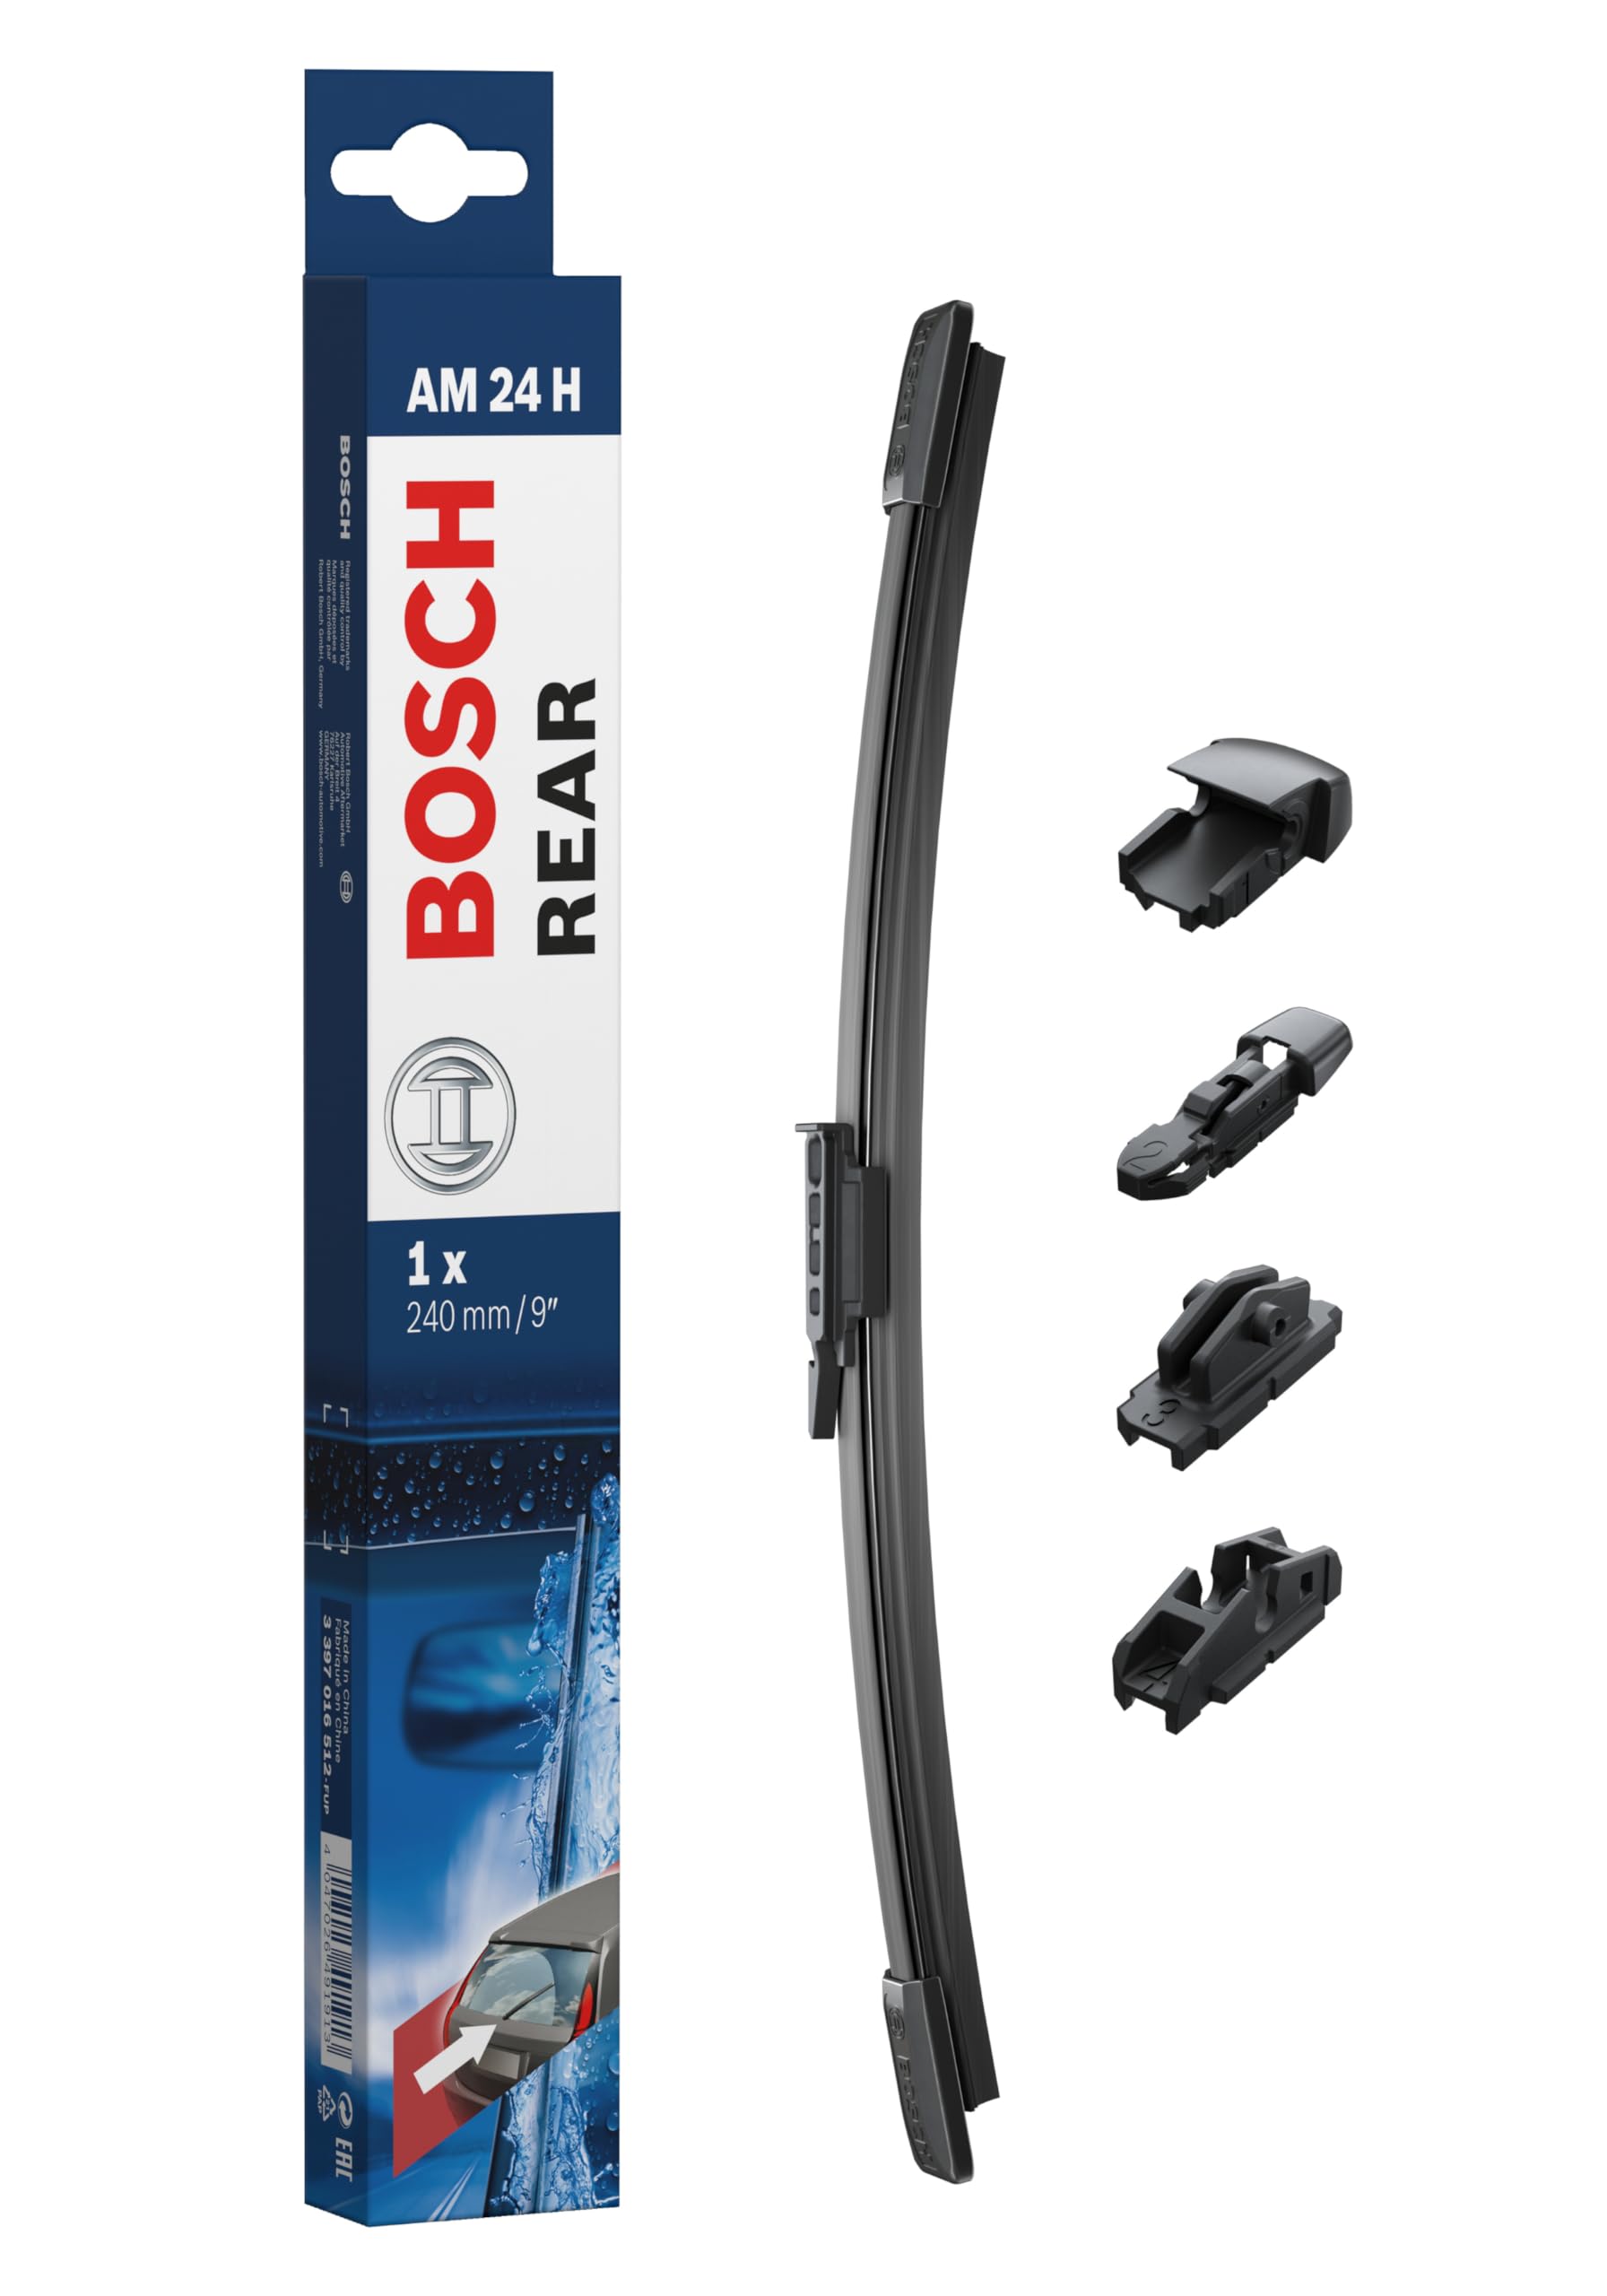 Bosch AM24H - Scheibenwischer Rear - Länge: 240 mm - Scheibenwischer für Heckscheibe von Bosch Automotive